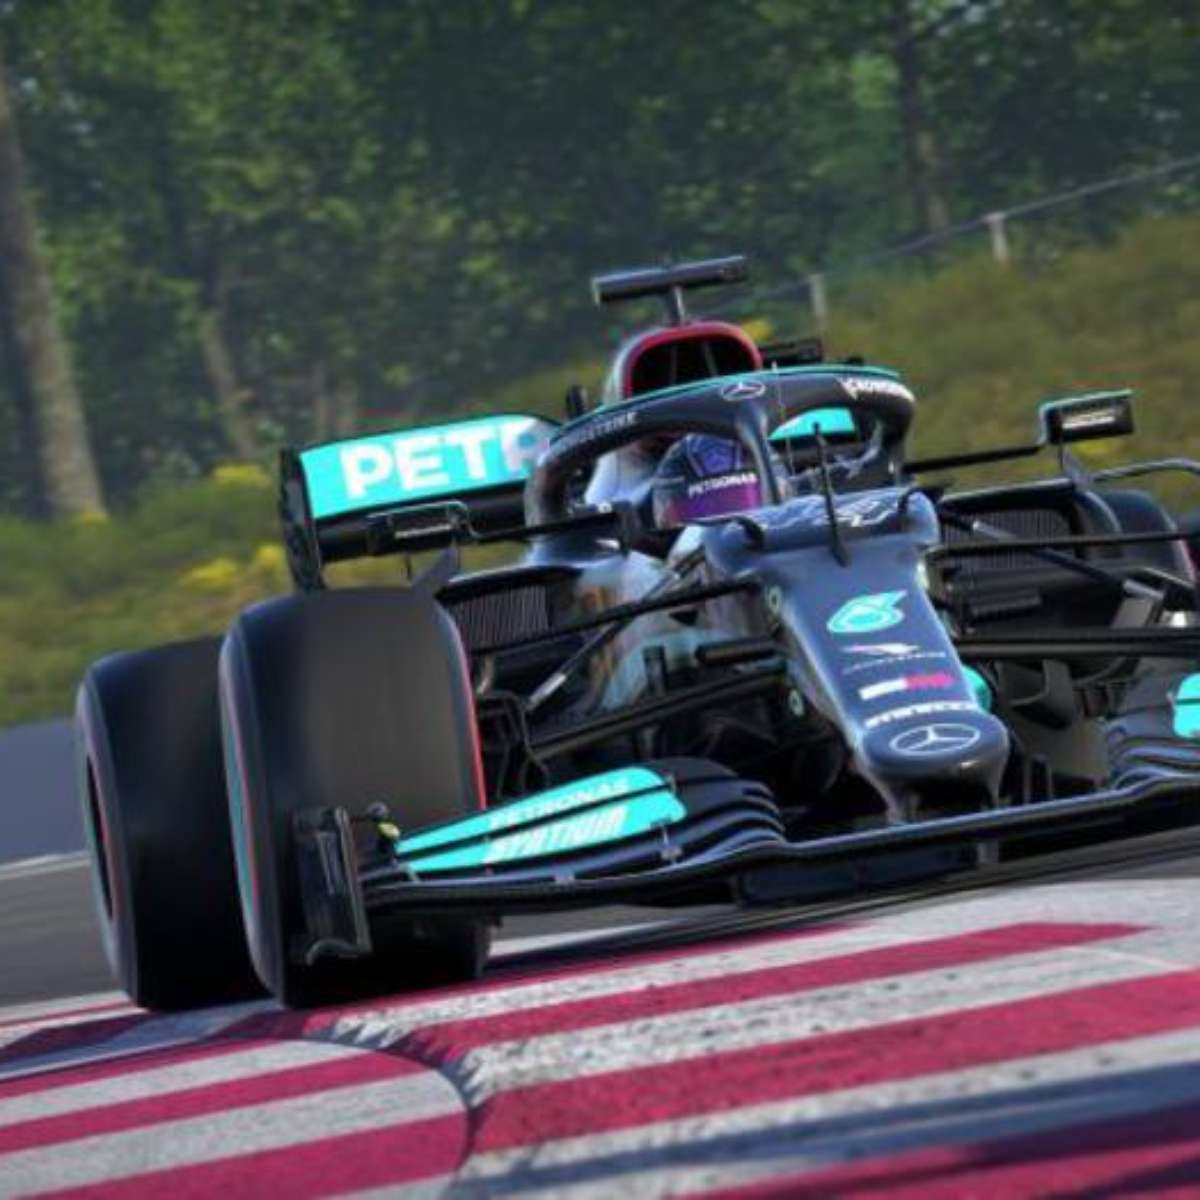 F1 2021': jogo chega em 16 de julho com modo história - Olhar Digital